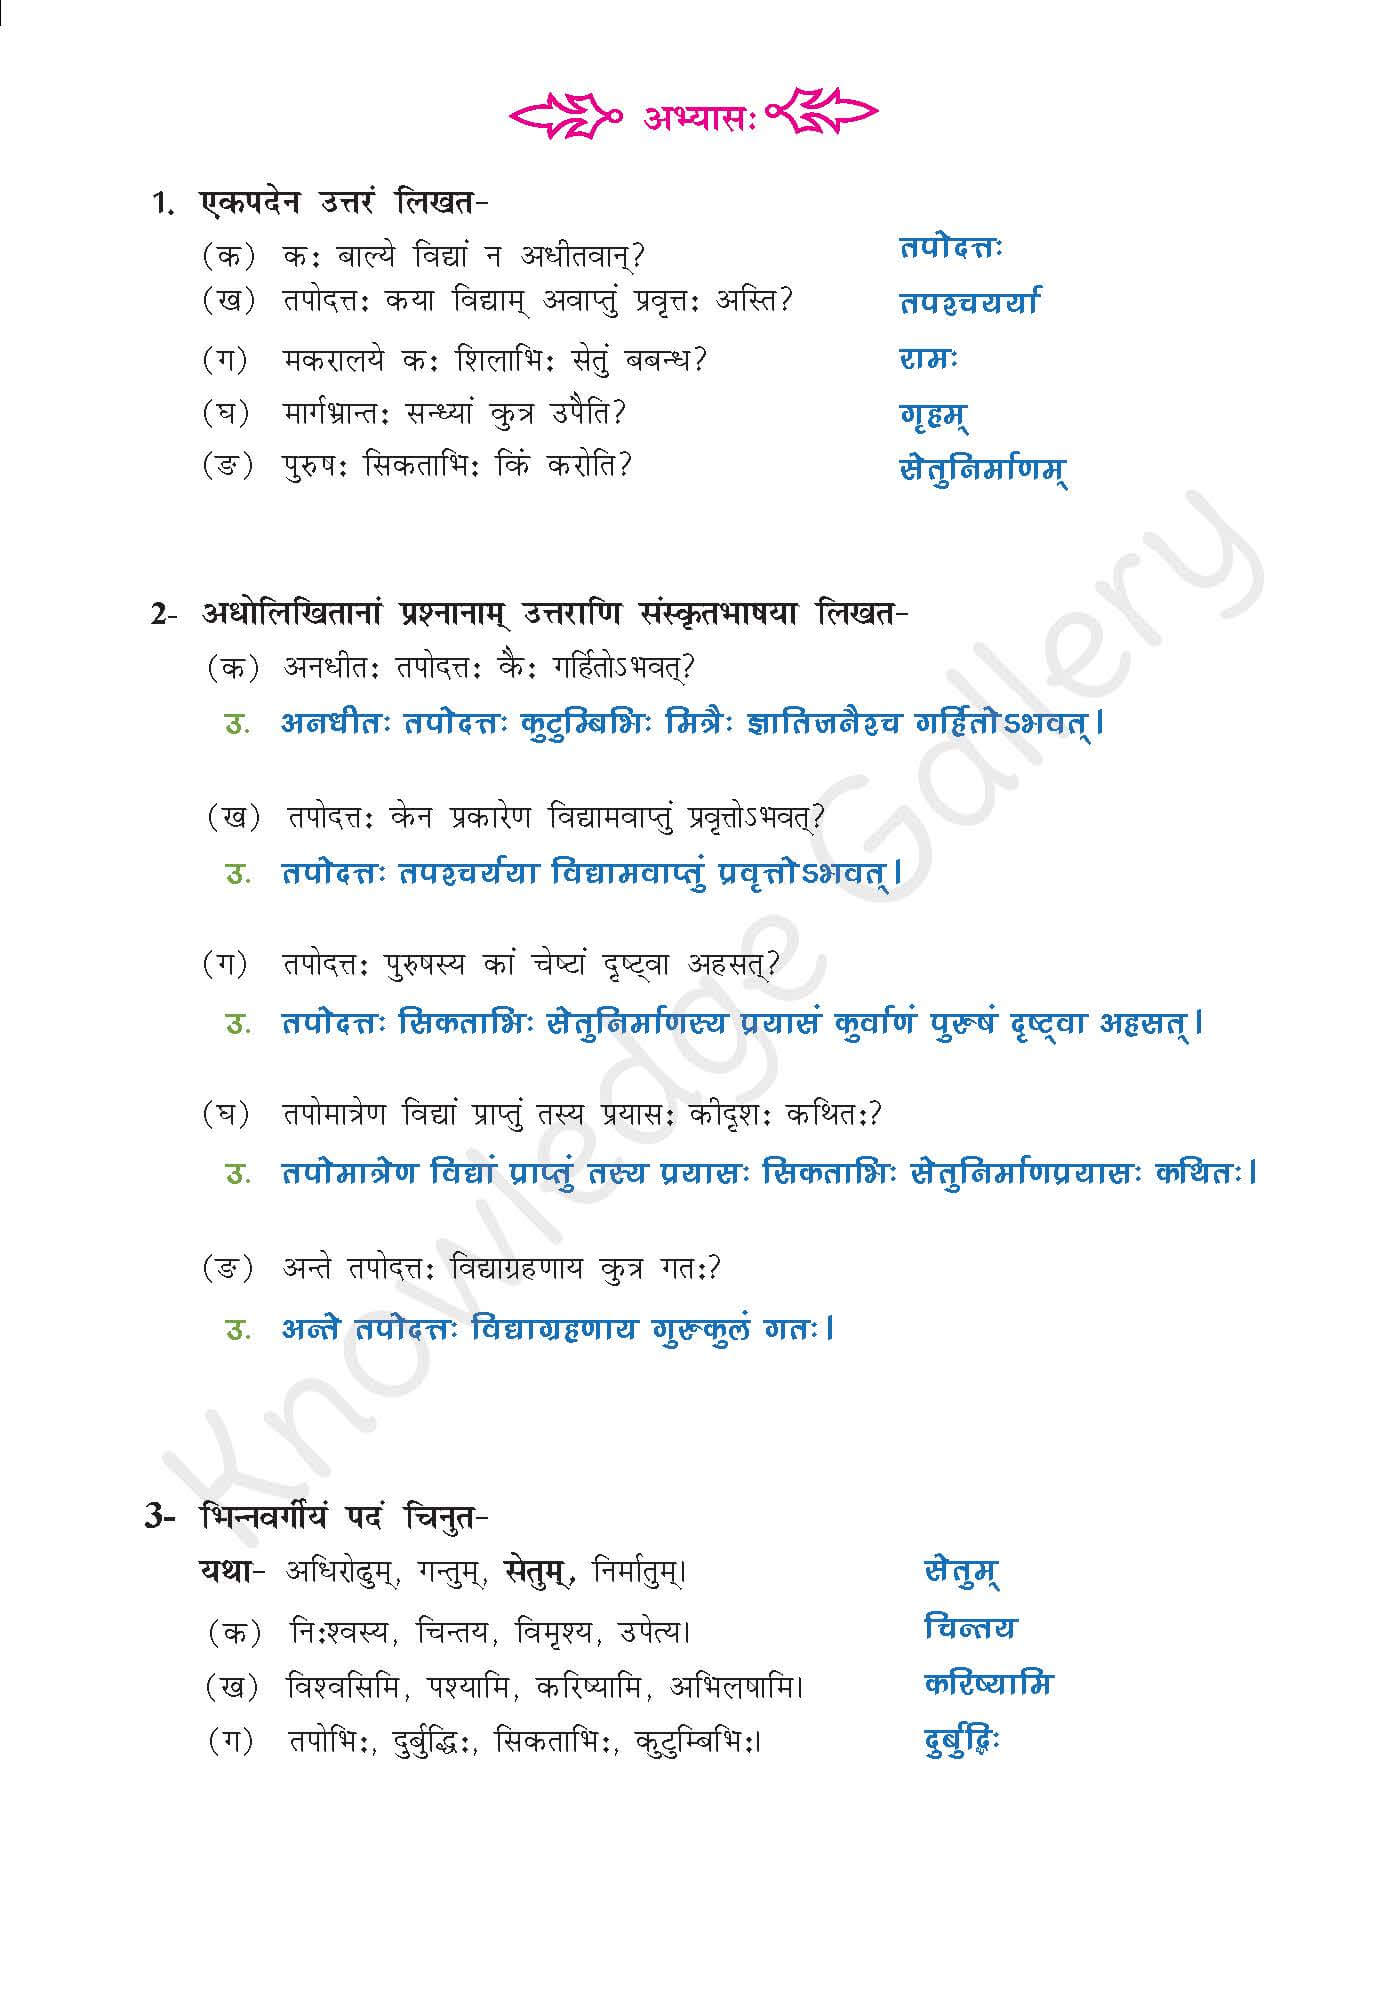 NCERT Solution For Class 9 Sanskrit Chapter 7 part 6